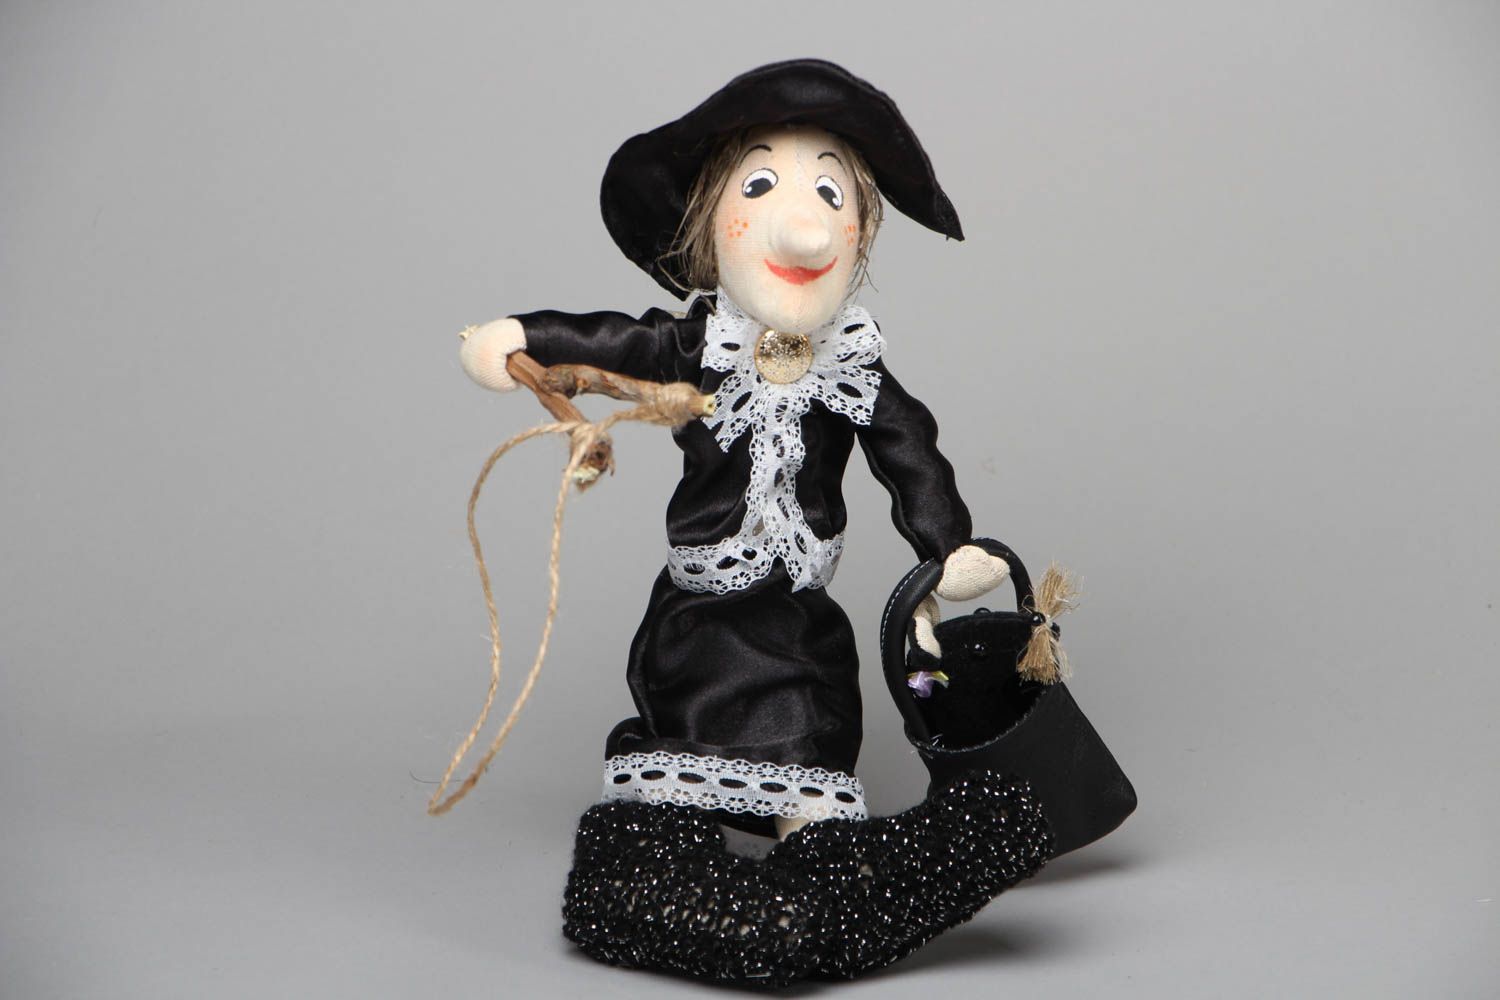 Textil Puppe handmade Dame in Schwarz foto 1